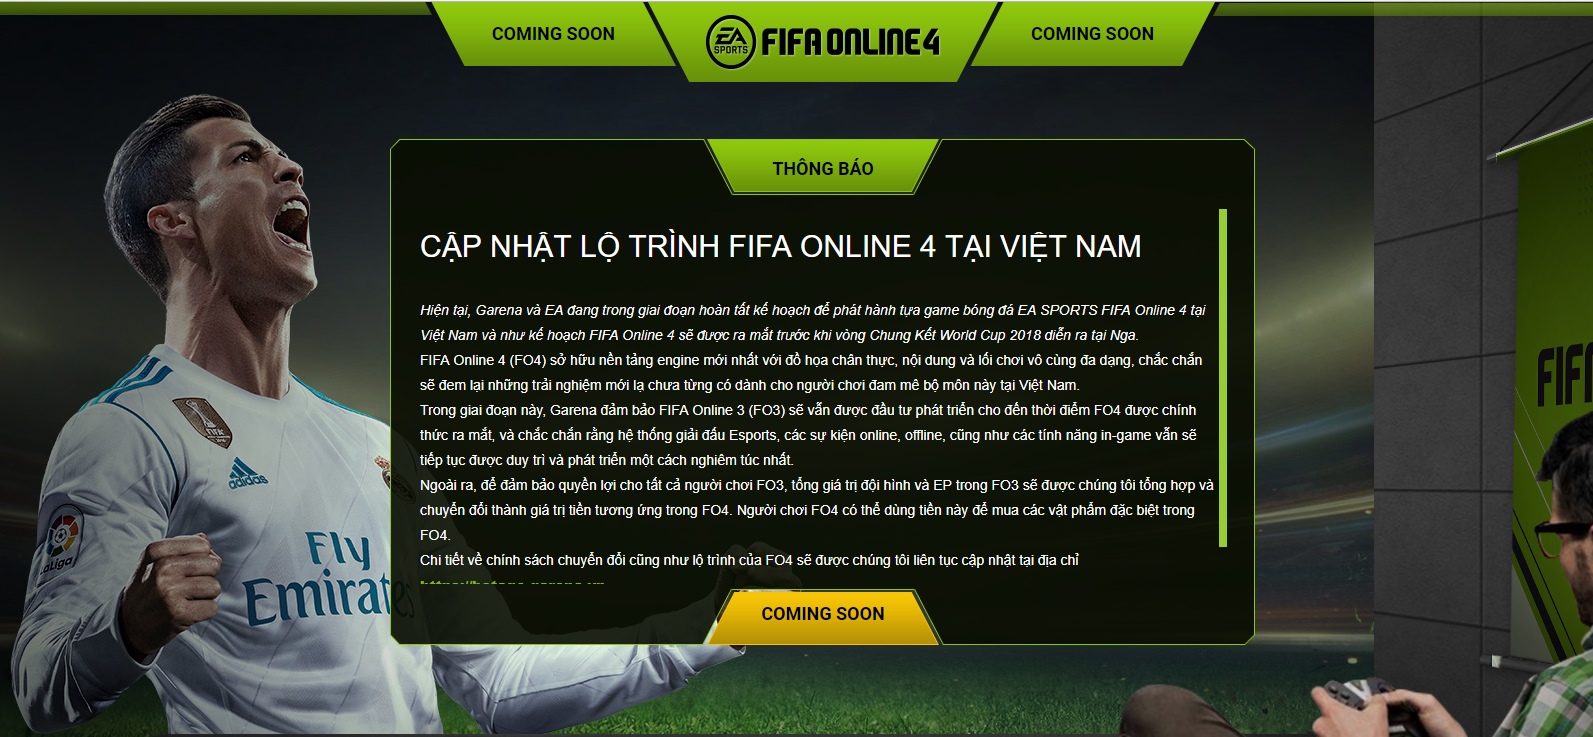 FIFA Online 4 được Garena đàm phán mua thành công, ấn định thời điểm ra mắt tại Việt Nam